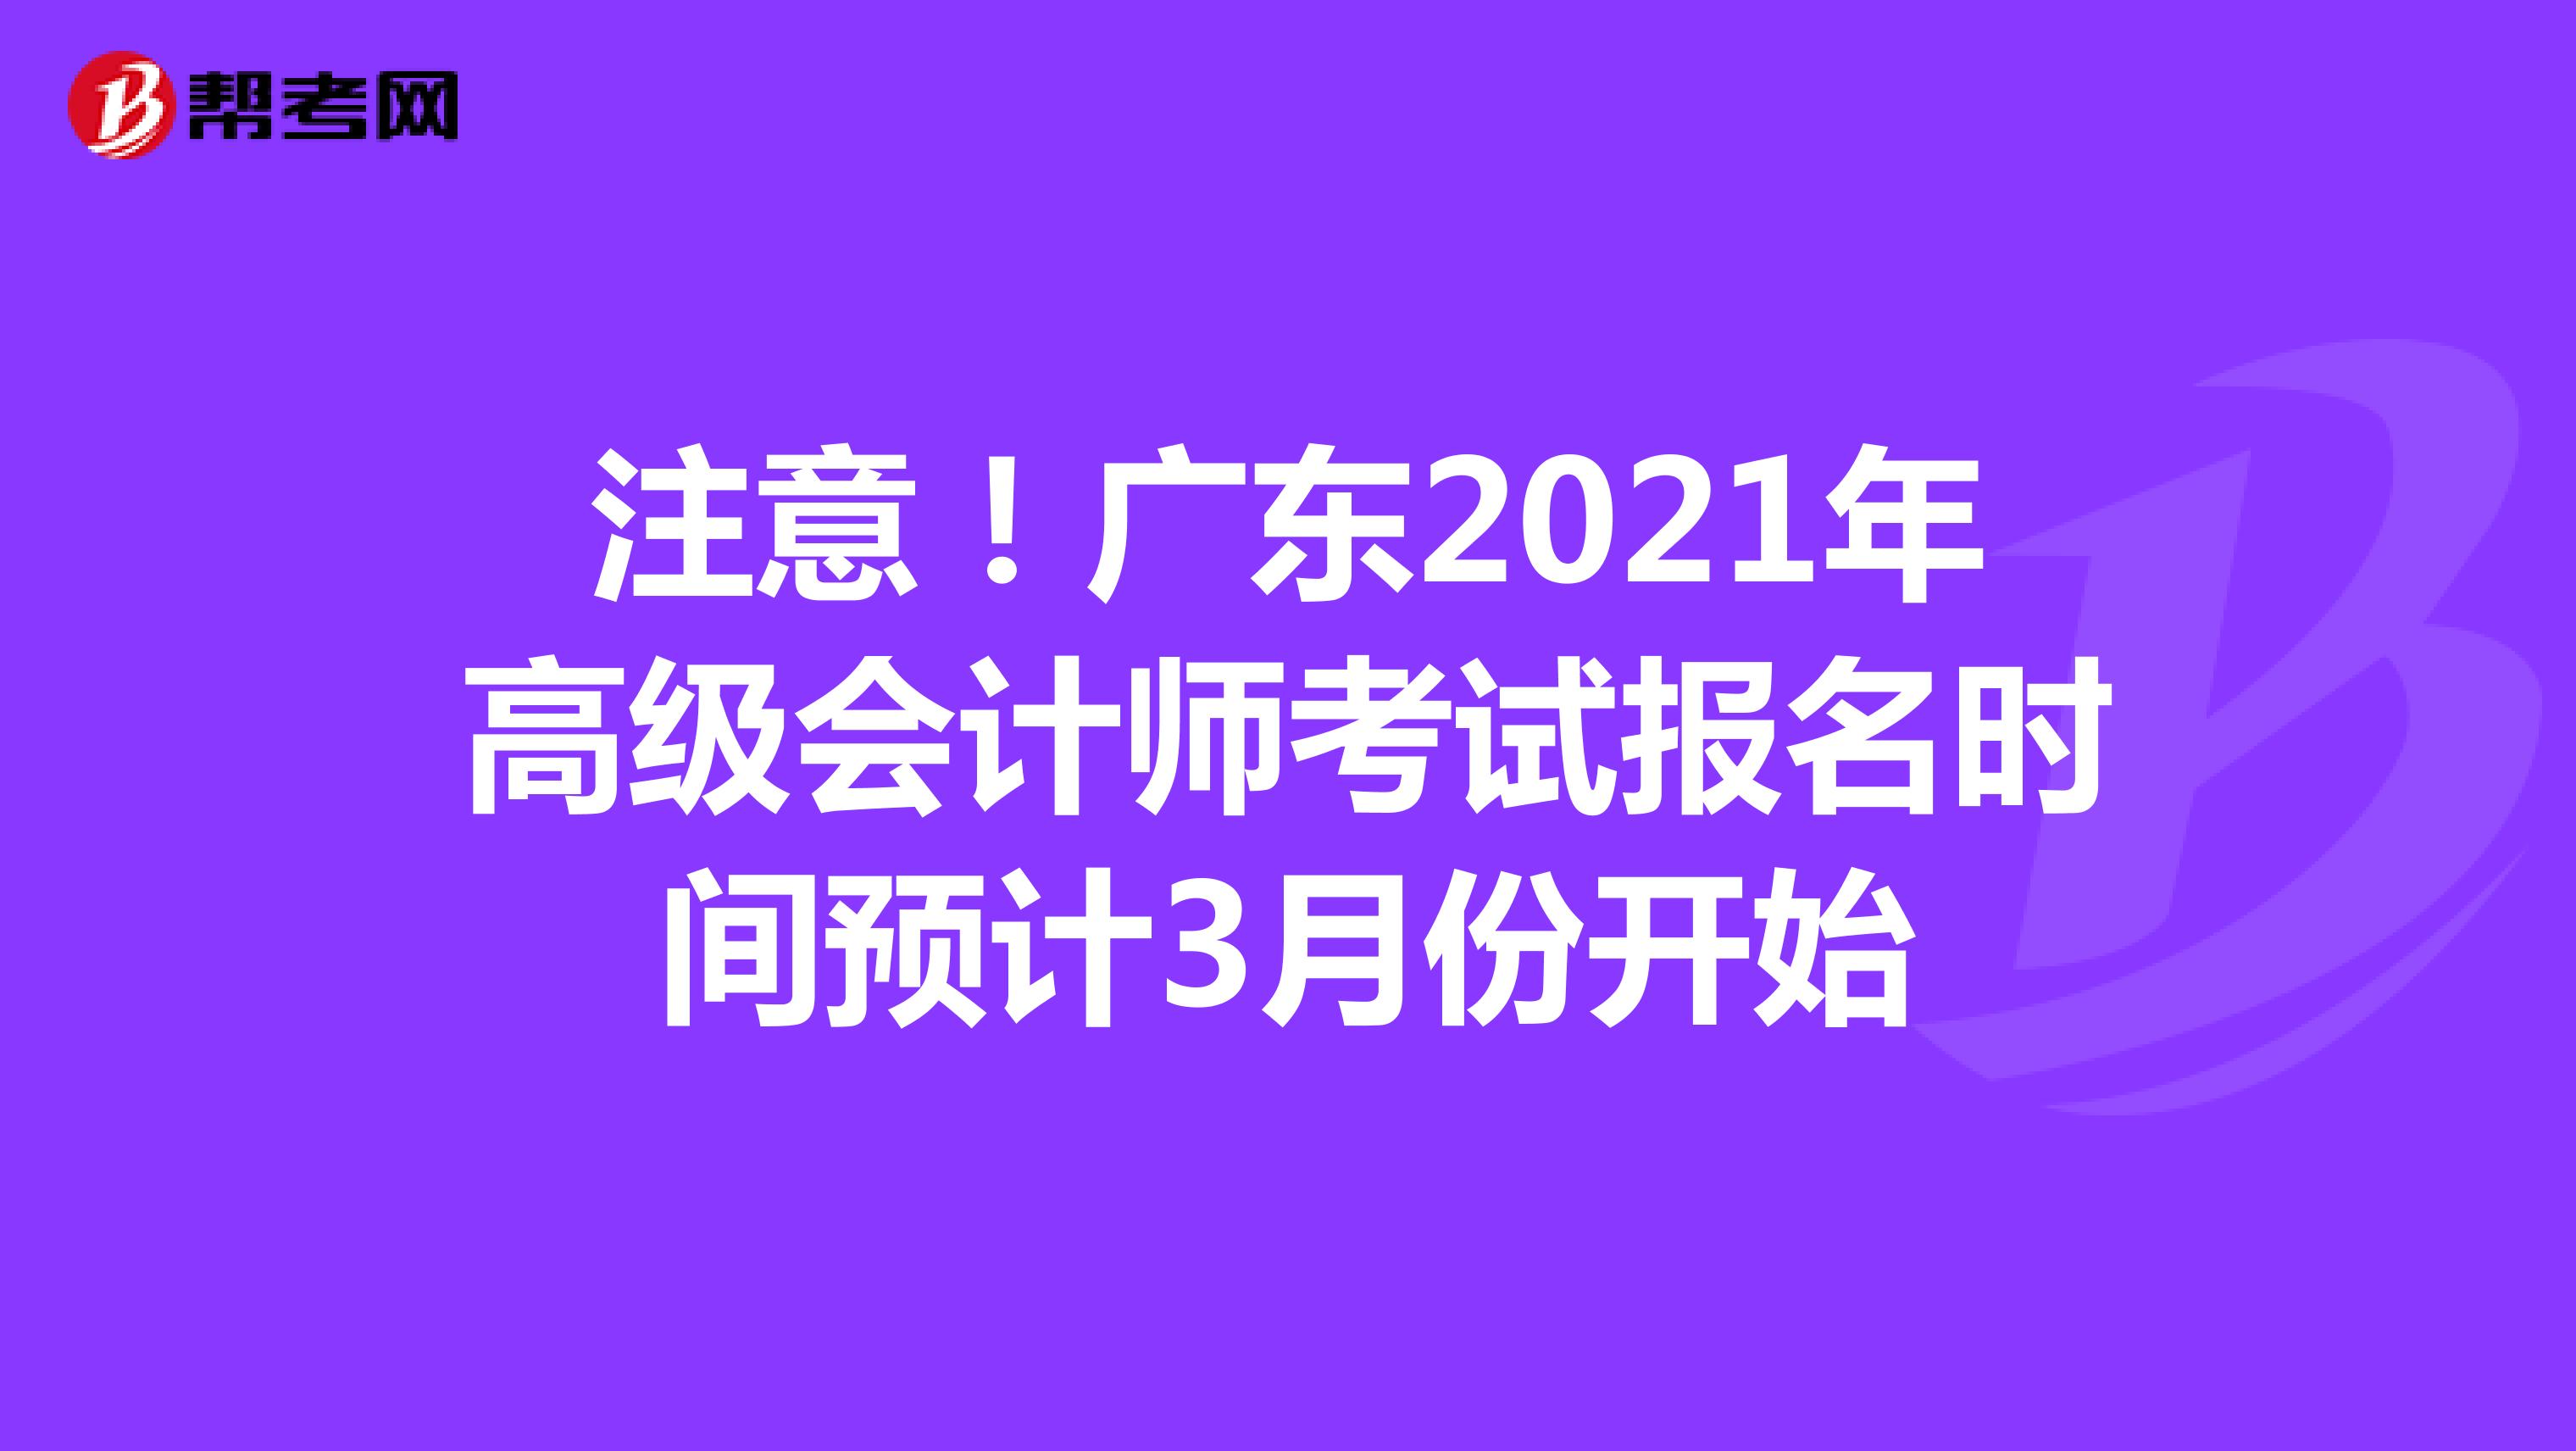 注意！广东2021年高级会计师考试报名时间预计3月份开始